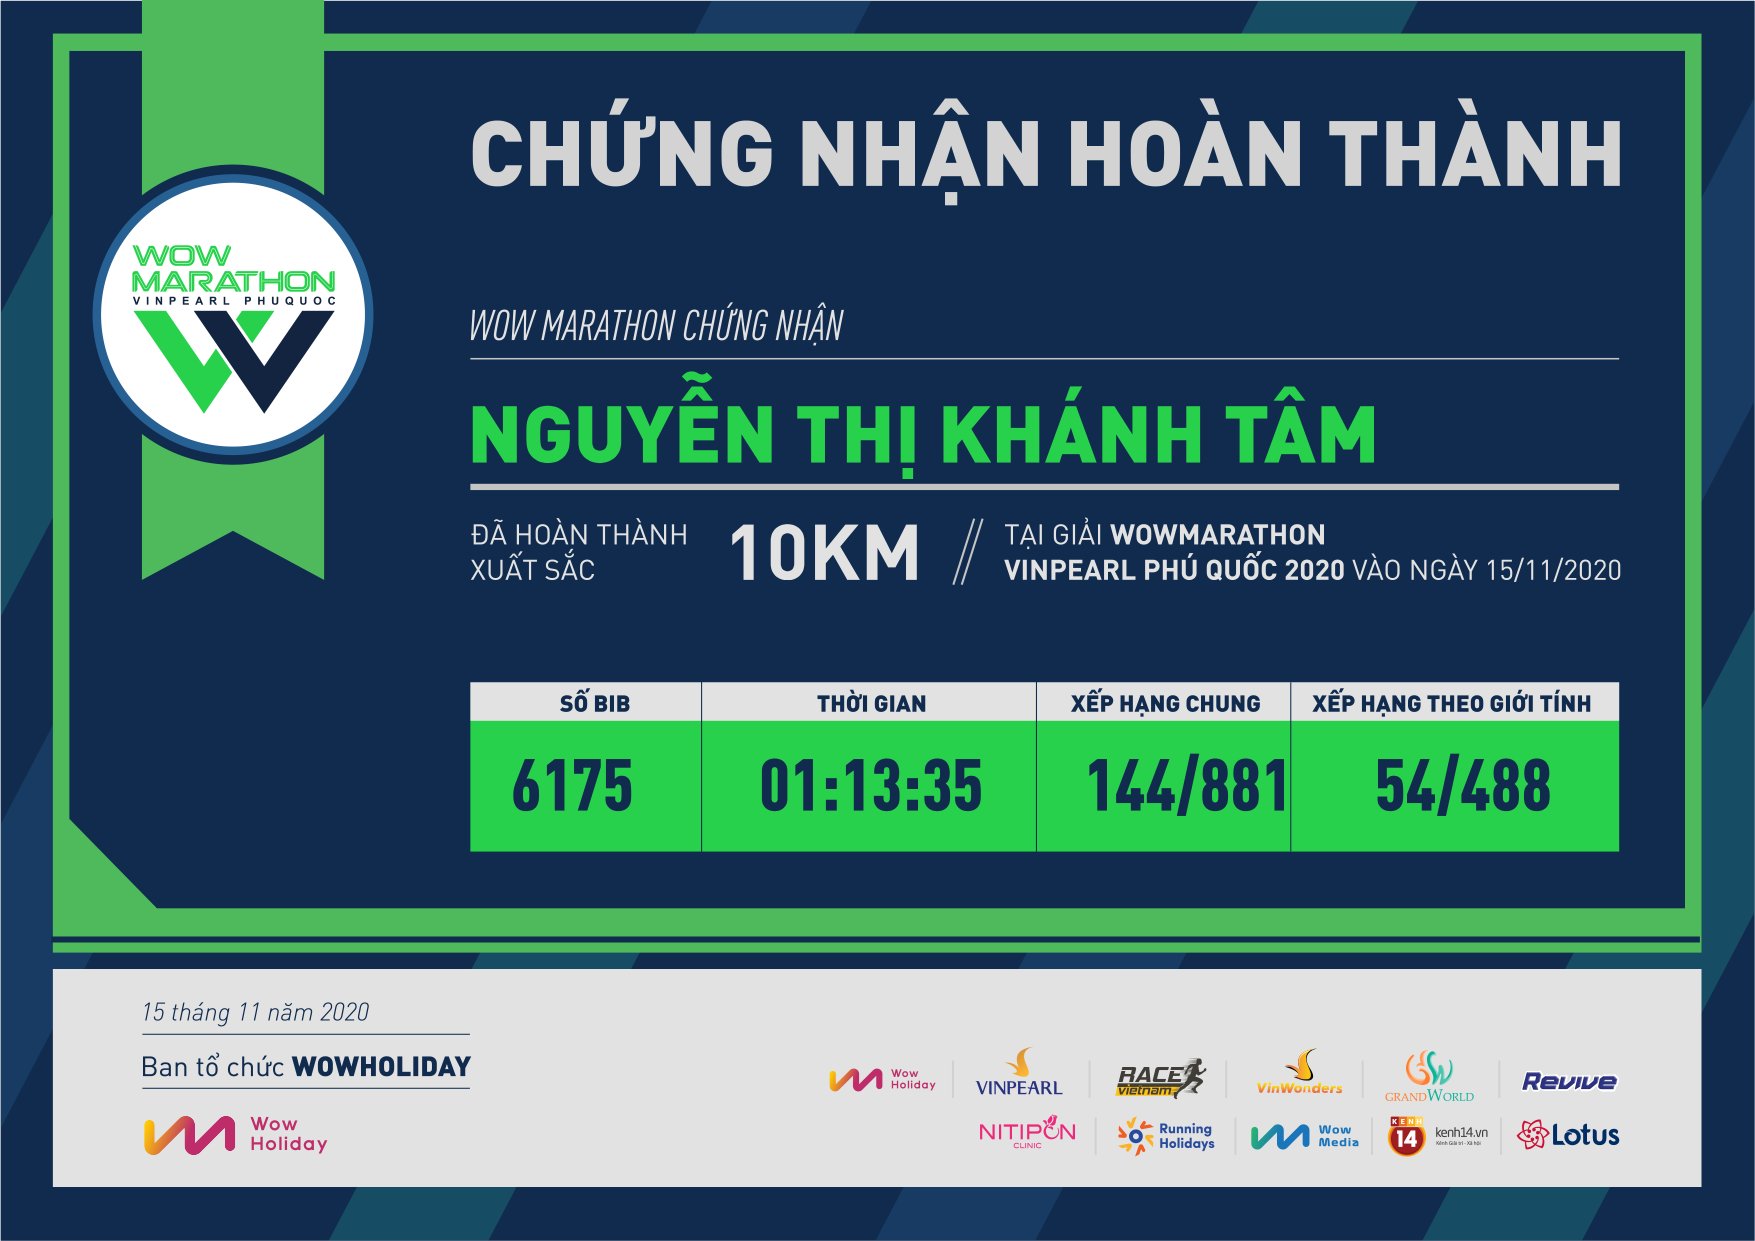 6175 - Nguyễn Thị Khánh Tâm